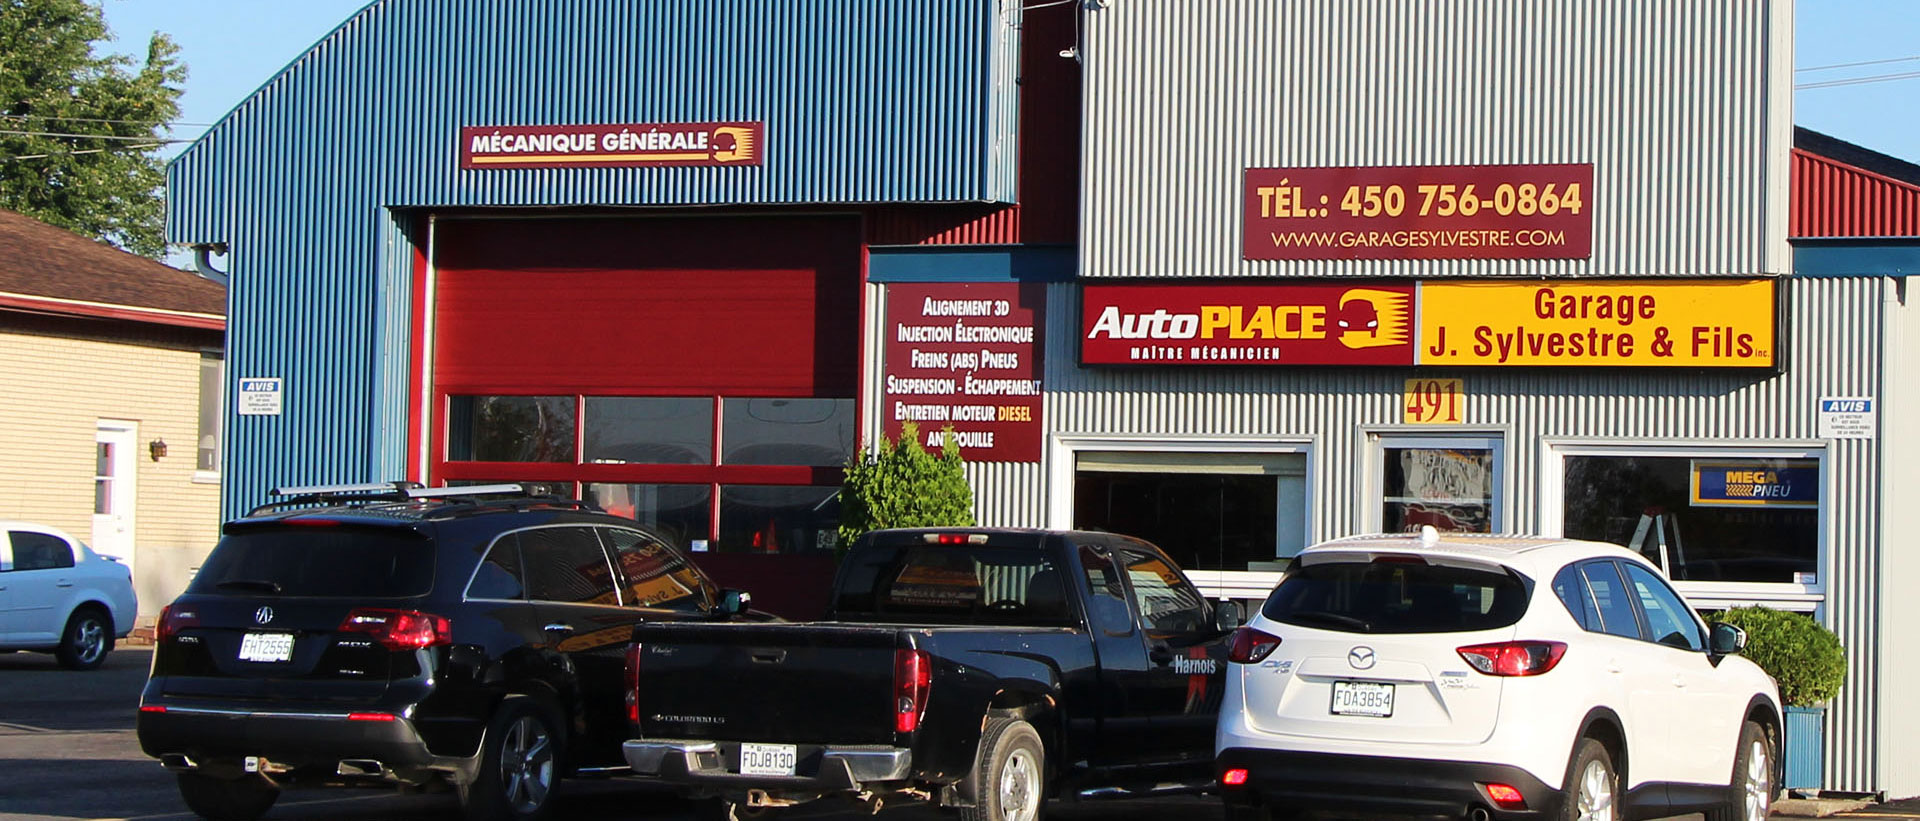 Accessoires automobile et camion léger - Centre du Pneus JSB Performance :  Garage Drummondville docteur du pare-brise